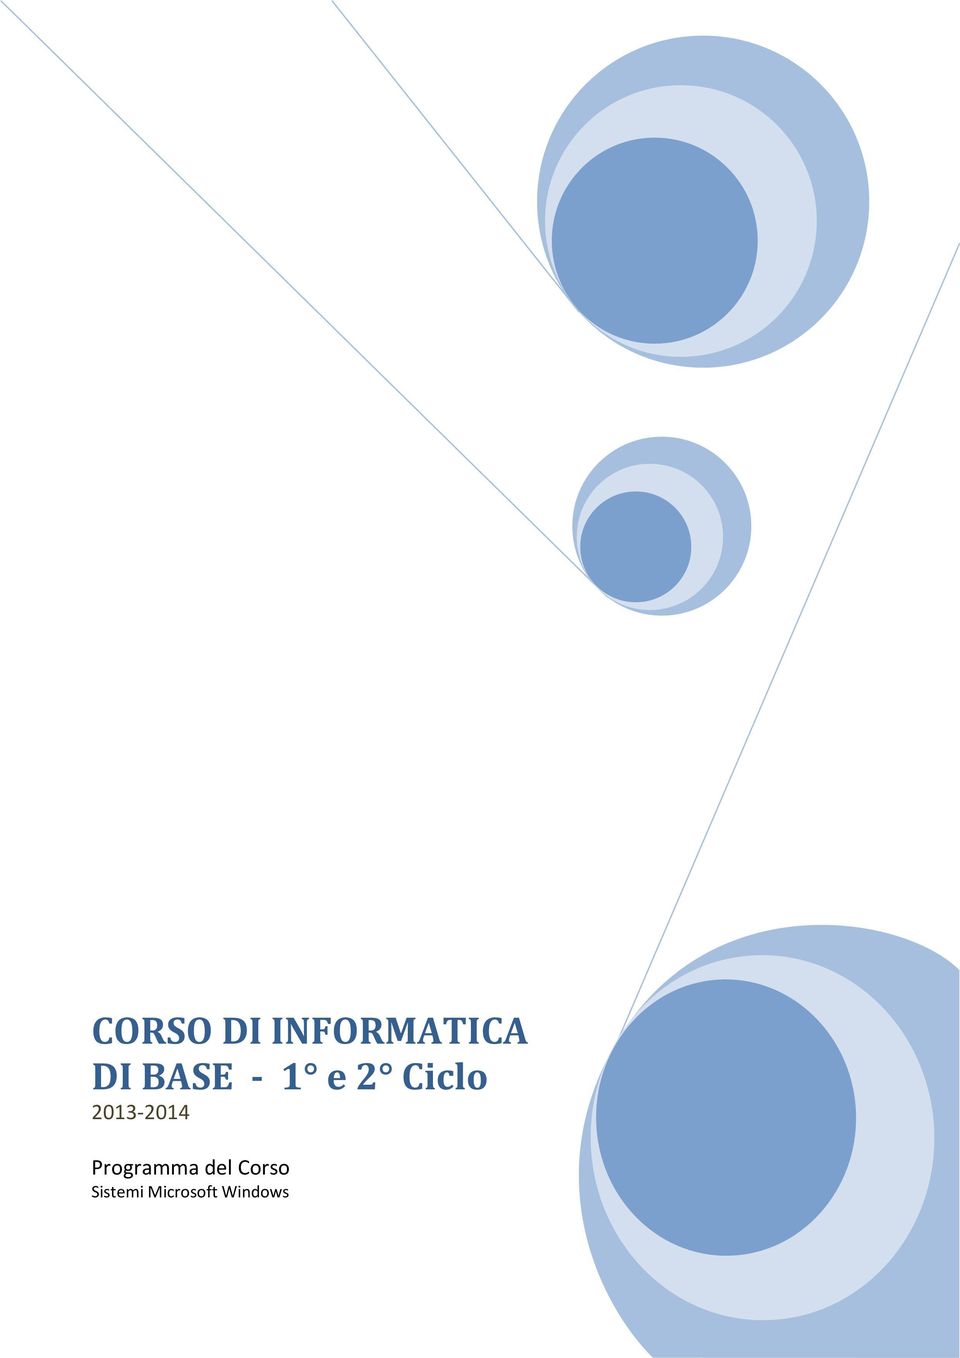 2013-2014 Programma del